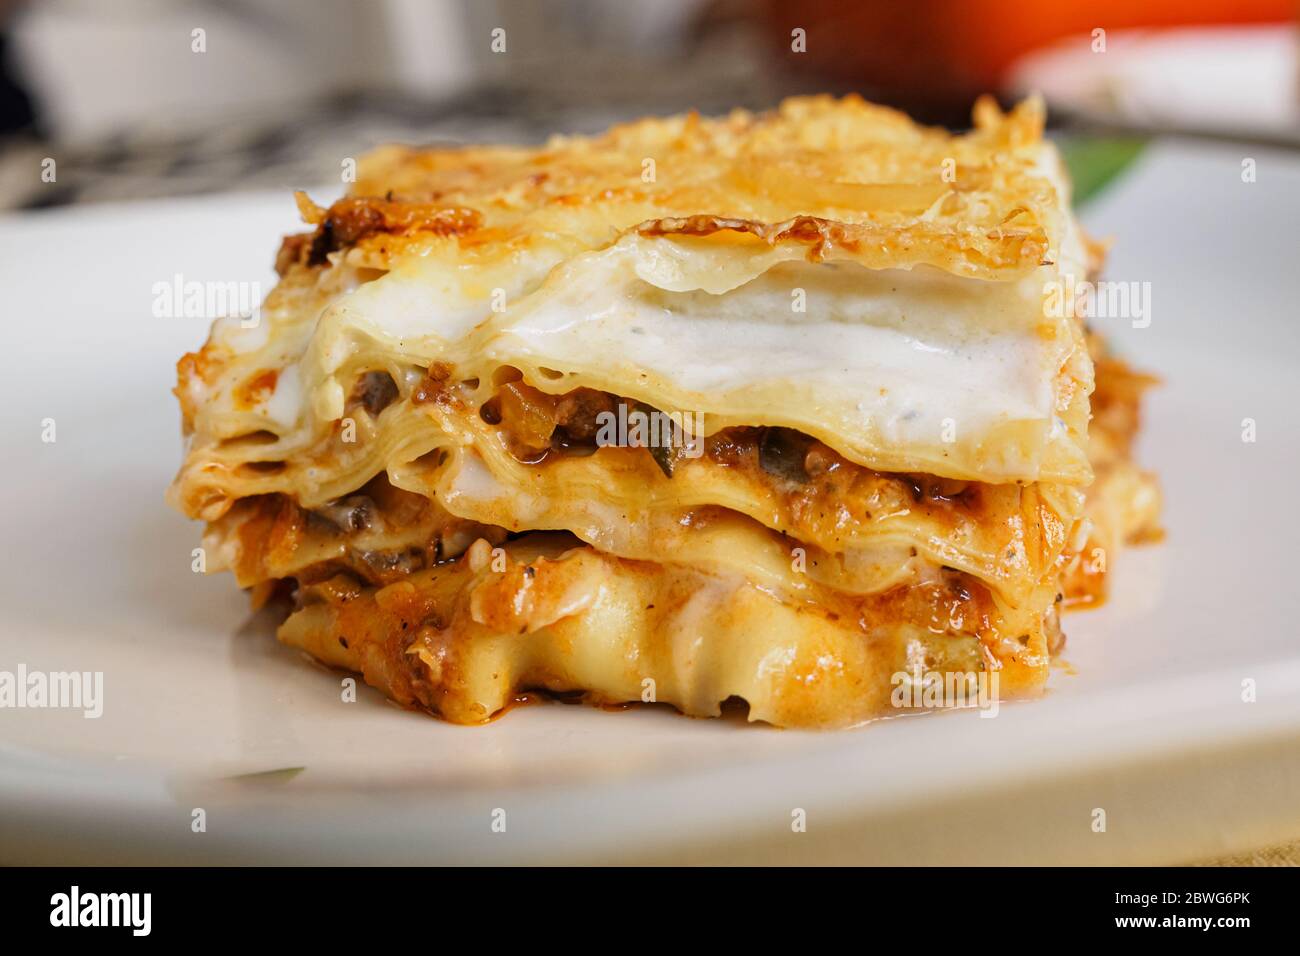 Portion italienische Lasagne mit Fleisch und Gemüse gefüllt, typisch  italienische Küche Stockfotografie - Alamy